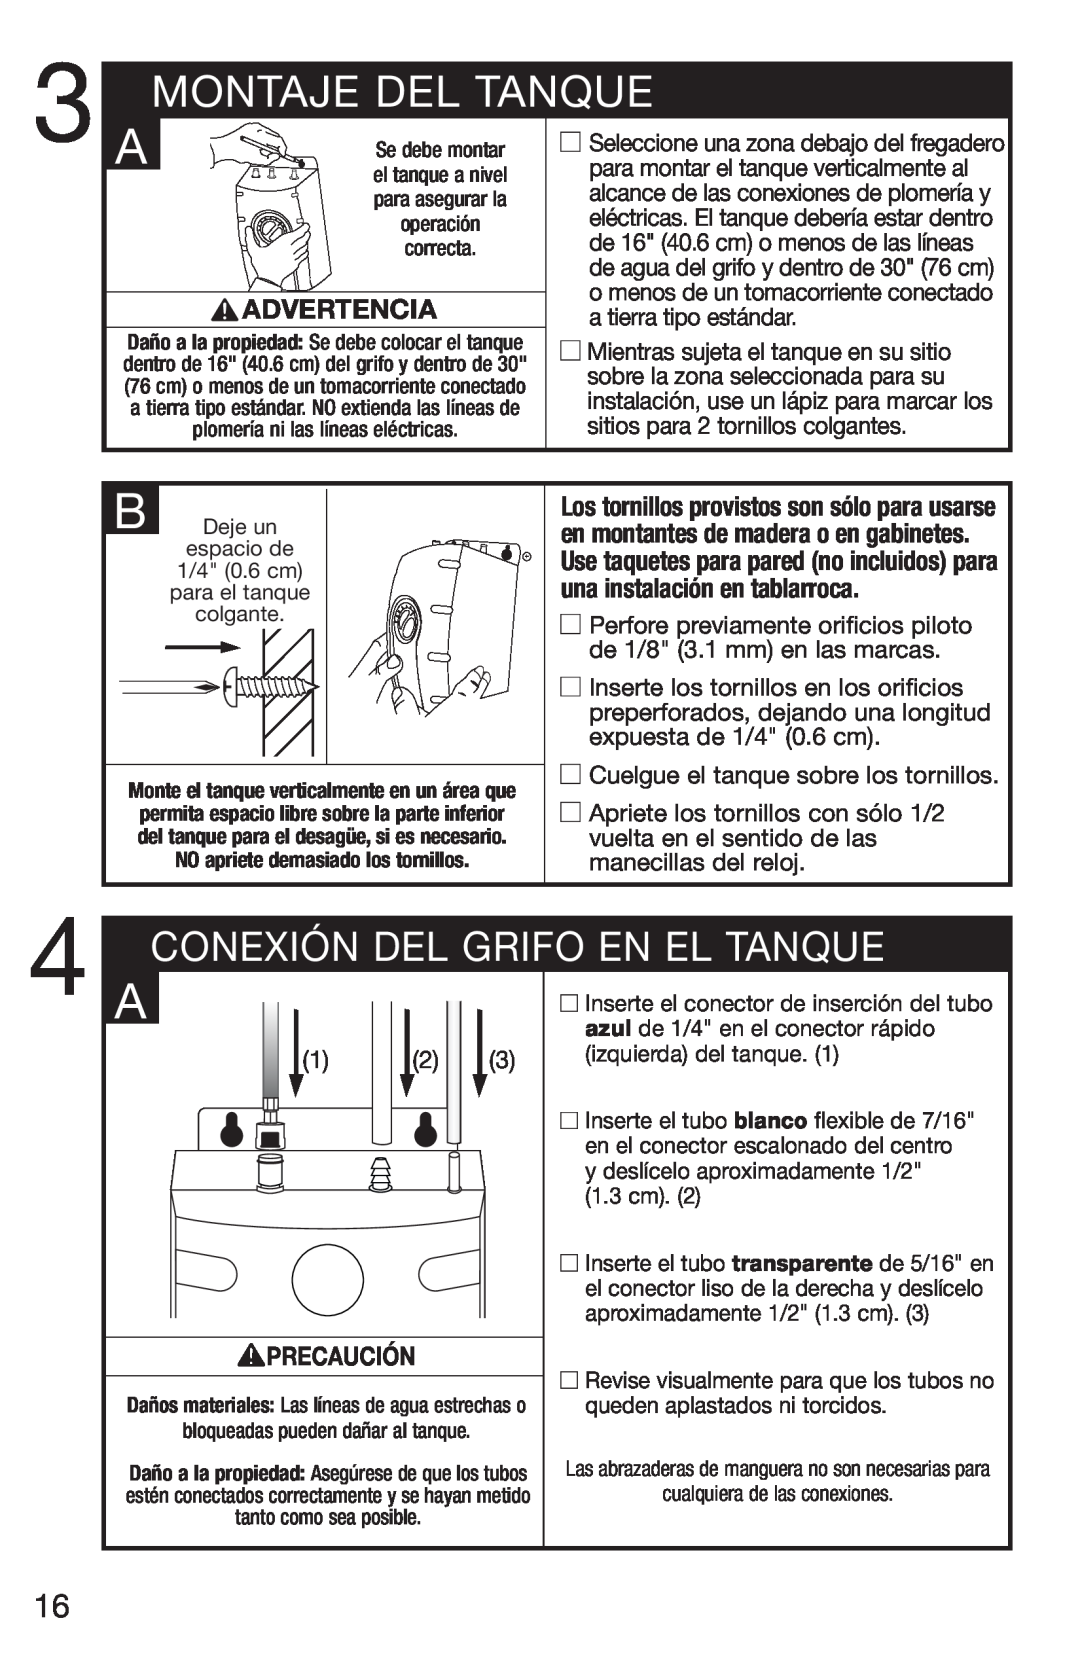 Emerson UWL owner manual Montaje Del Tanque, Advertencia, Precaución, Conexión Del Grifo En El Tanque 